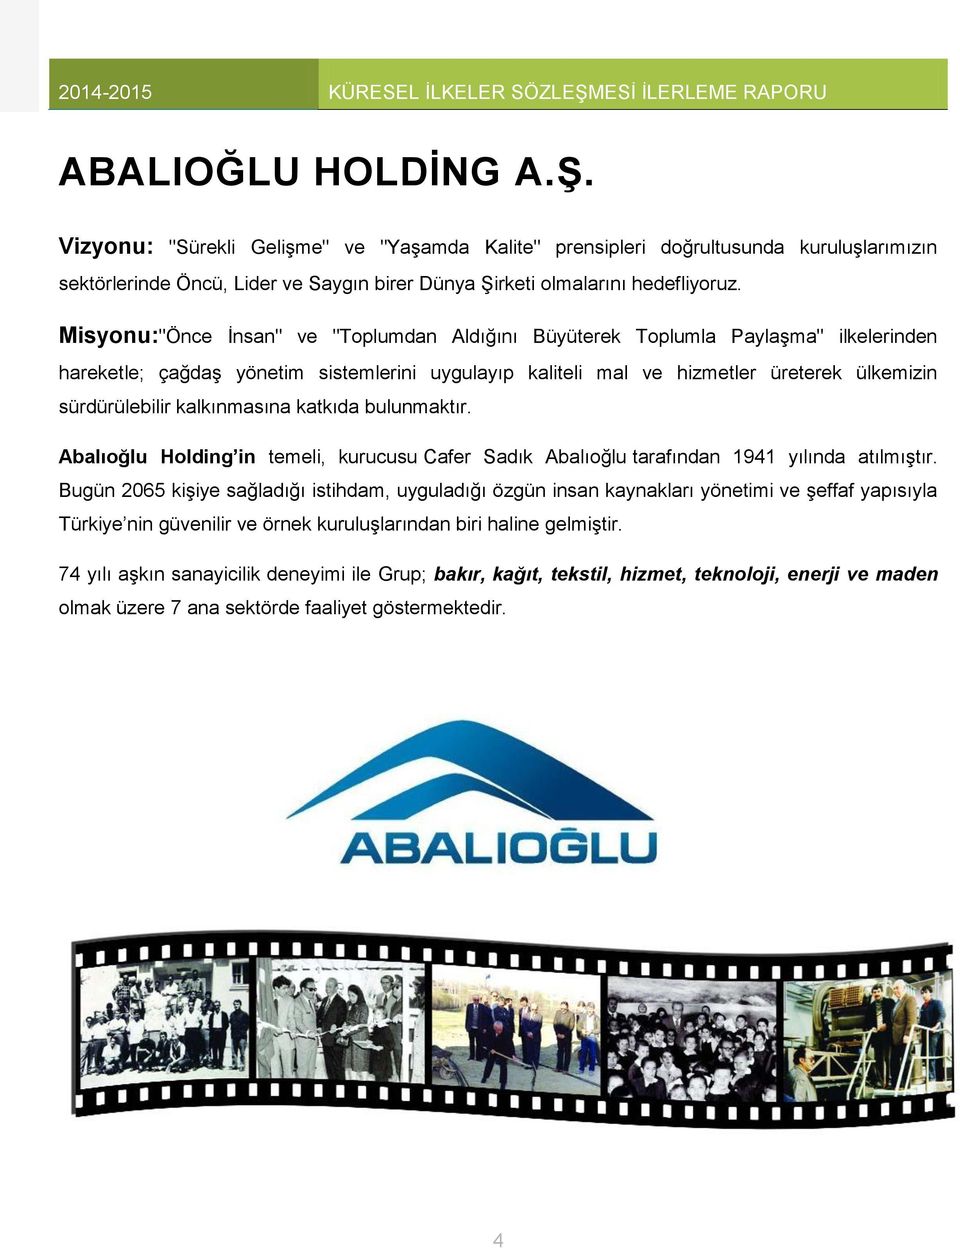 kalkınmasına katkıda bulunmaktır. Abalıoğlu Holding in temeli, kurucusu Cafer Sadık Abalıoğlu tarafından 1941 yılında atılmıştır.